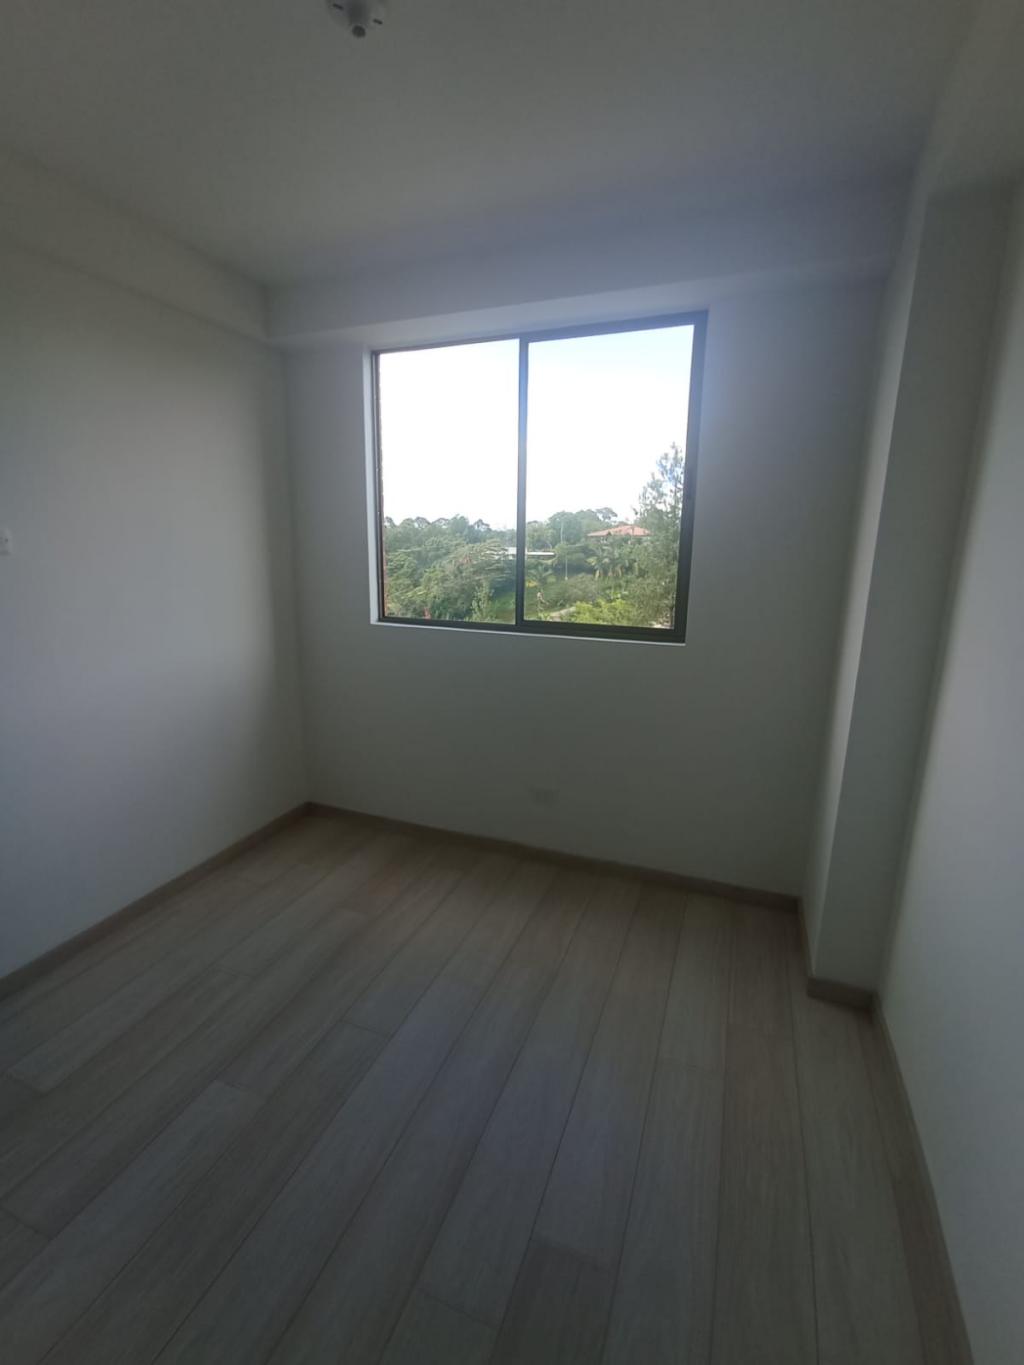 Apartamento en Arriendo por SPA GRUPO INMOBILIARIO ubicado en Rionegro. El código del inmueble es: 7389991 Imágen 3